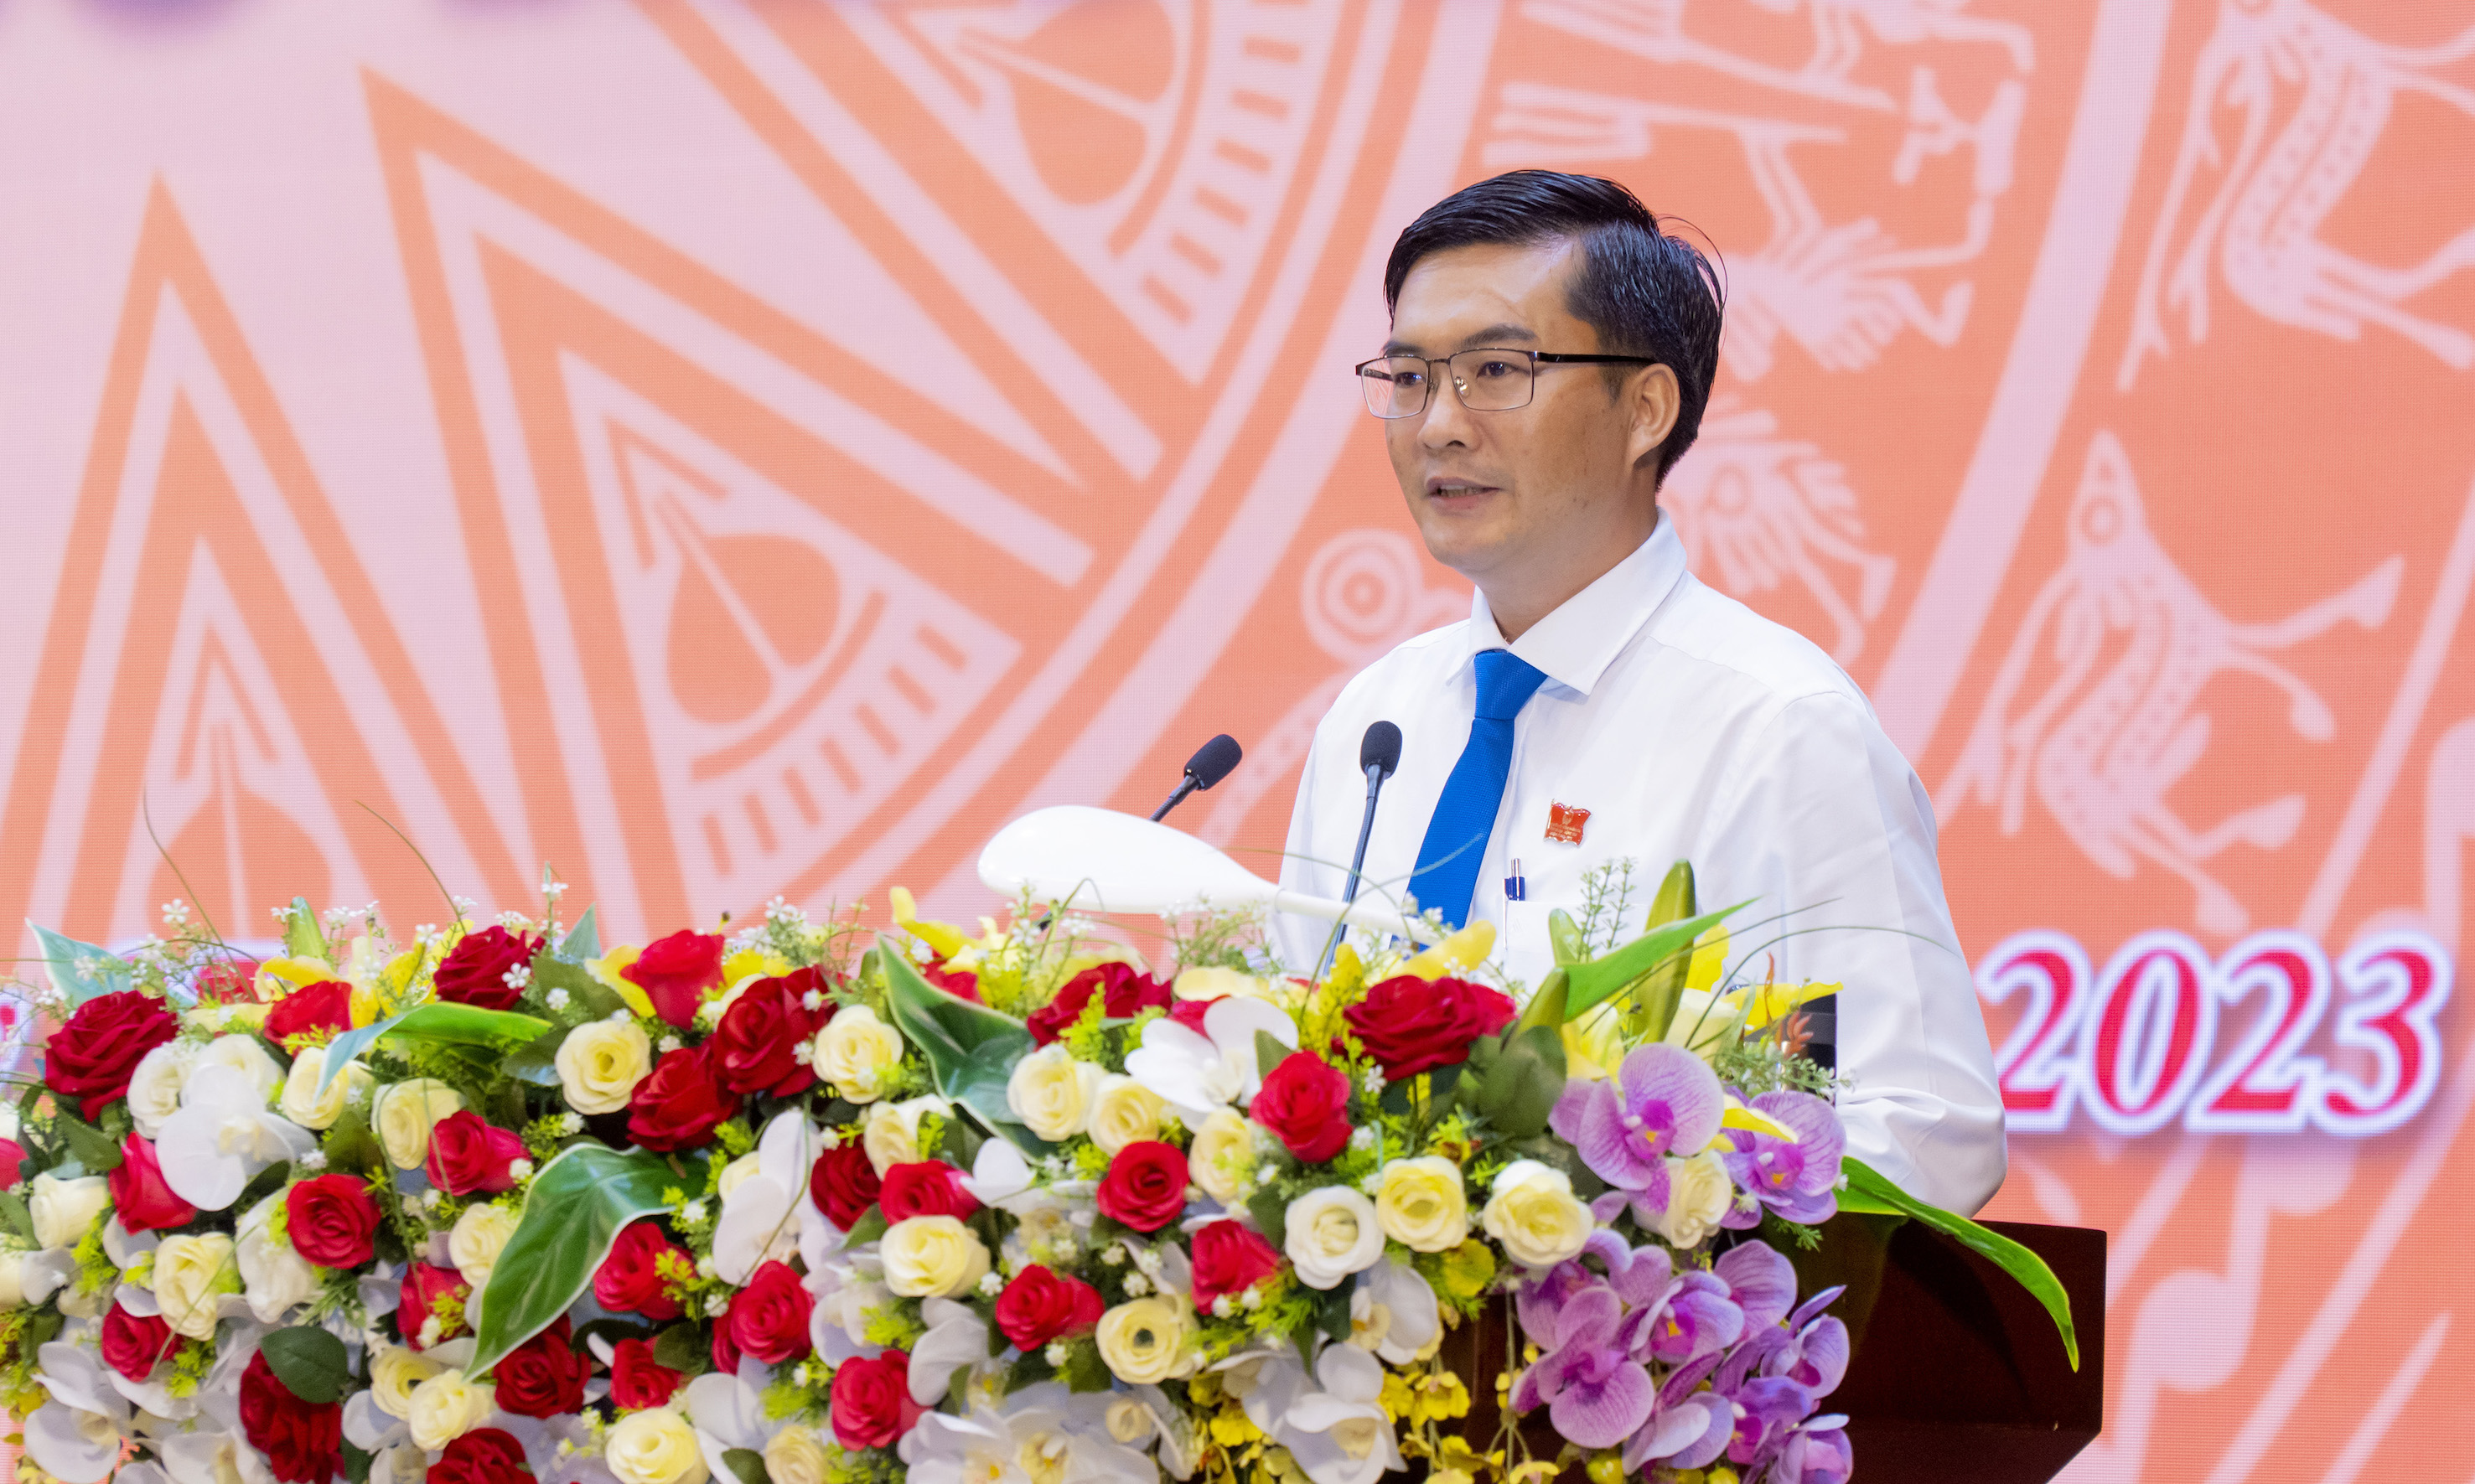 Ông Nguyễn Văn Tuân, Phó trưởng Ban Văn hóa - Xã hội HĐND tỉnh trình bày báo cáo kết quả thẩm tra các Tờ trình dự thảo nghị quyết thuộc lĩnh vực văn hóa xã hội.